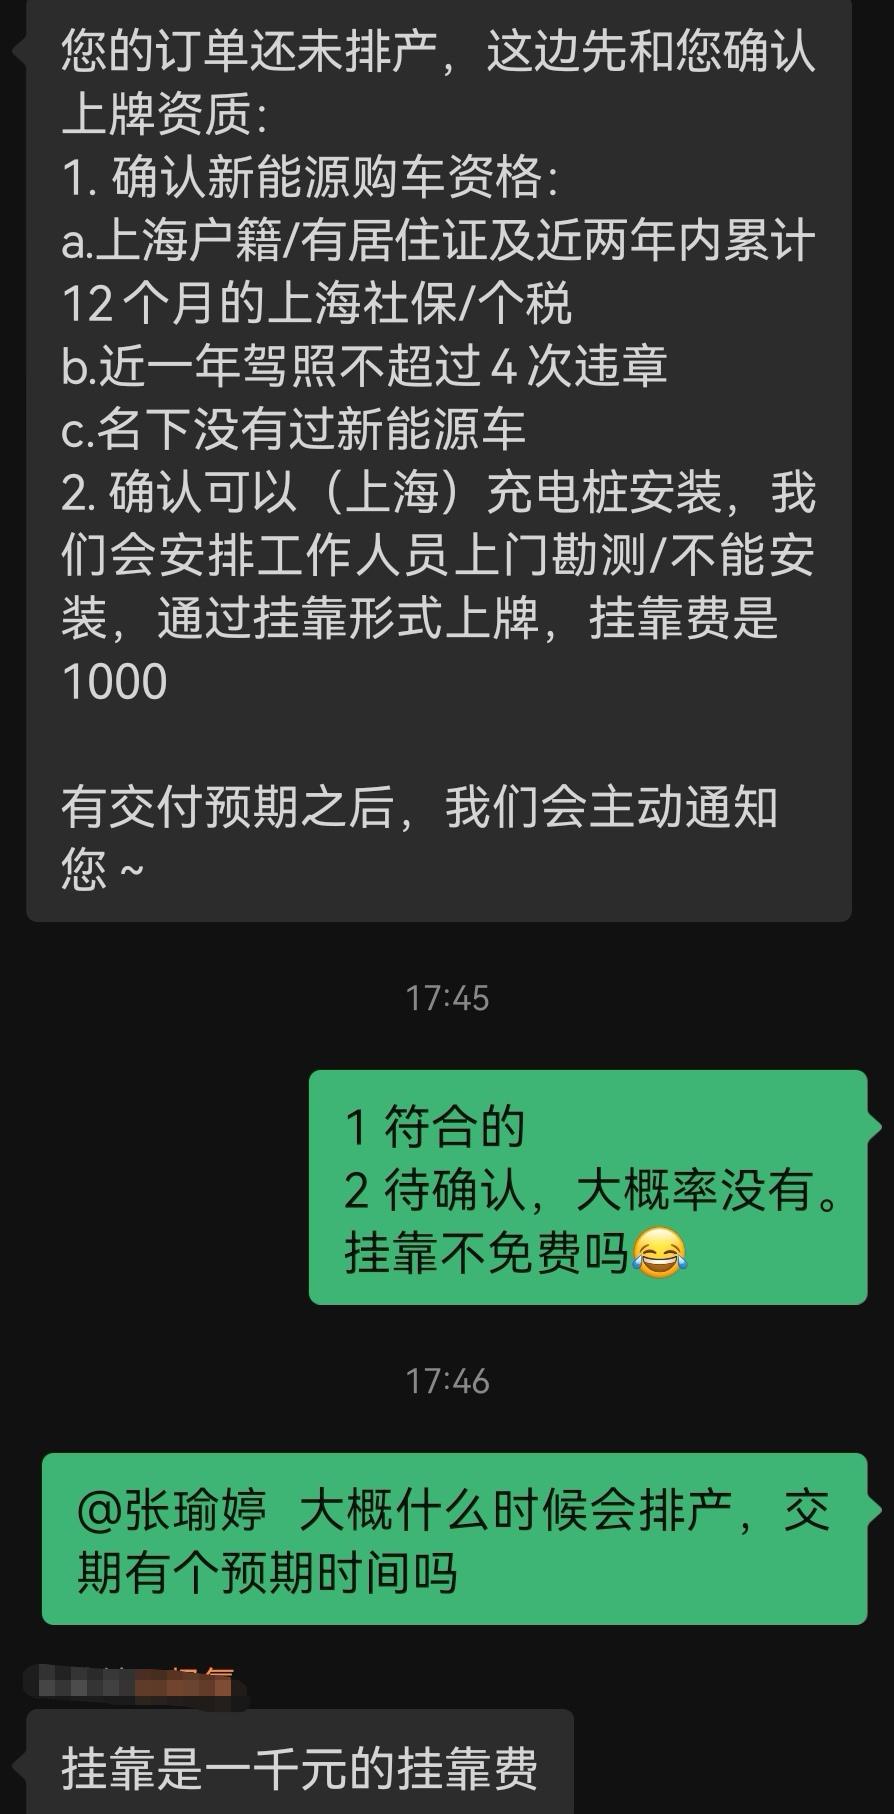 极氪ZEEKR 001 锁单了极氪伙伴说上海充电桩要挂靠1000元，这个情况属实吗？费用要出吗